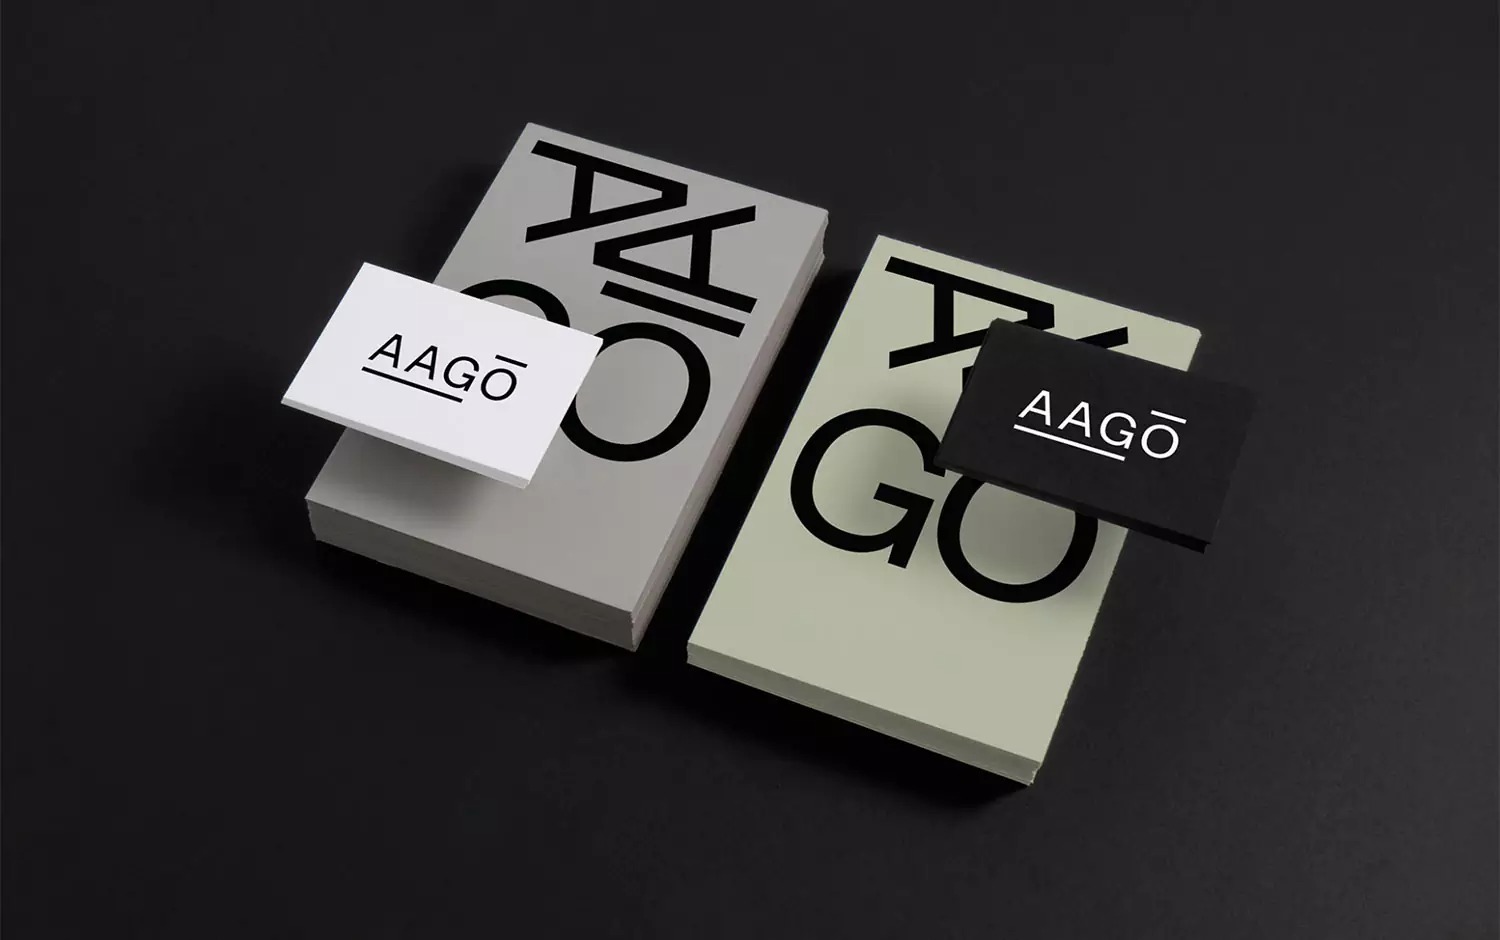 AAGO投资公司极简风格品牌视觉设计